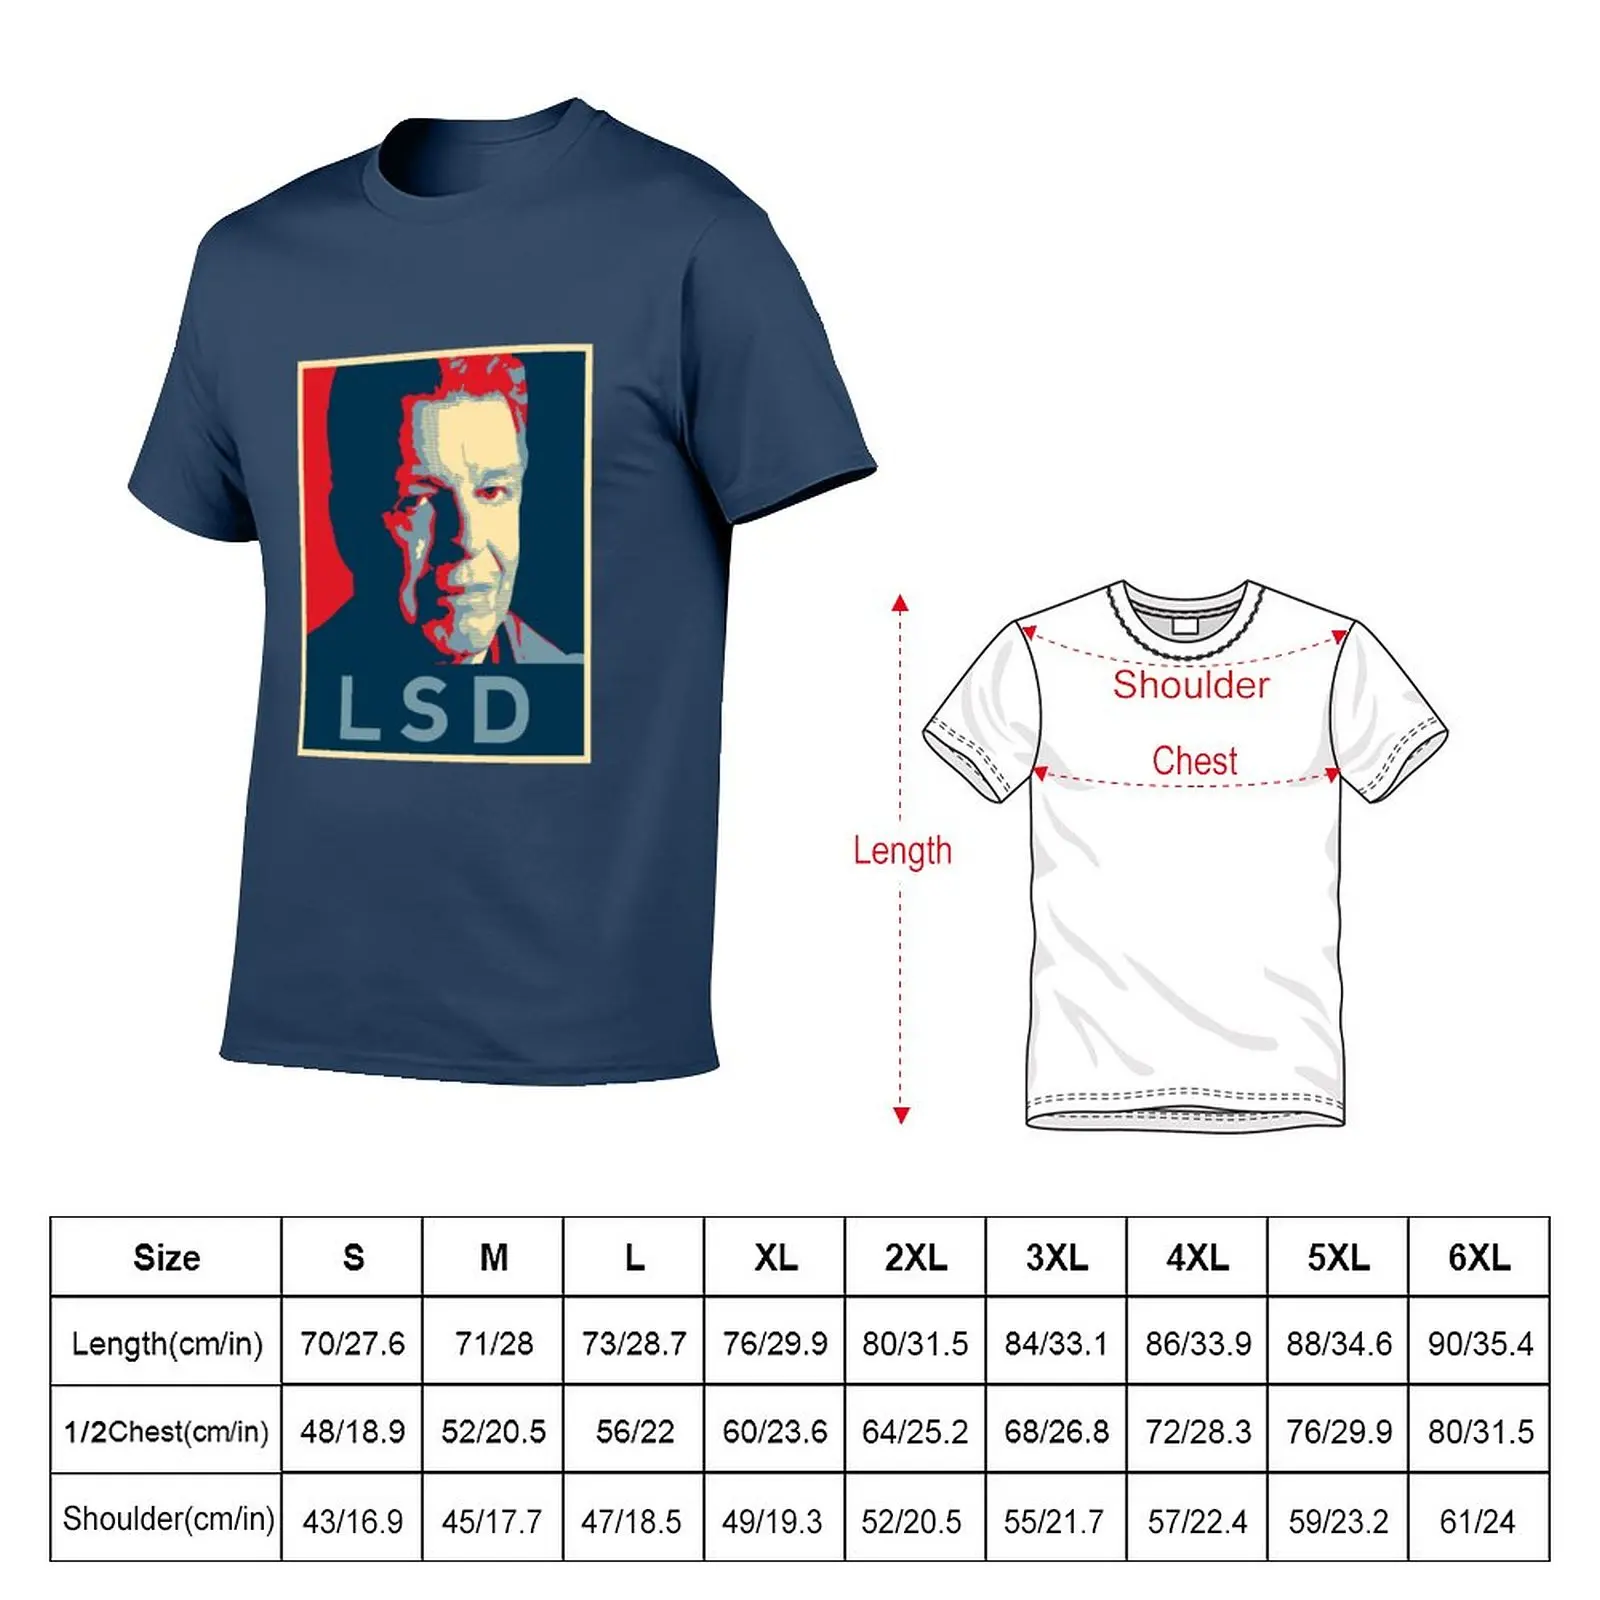 Camiseta con póster LSD para hombre, tops bonitos de gran tamaño, ropa